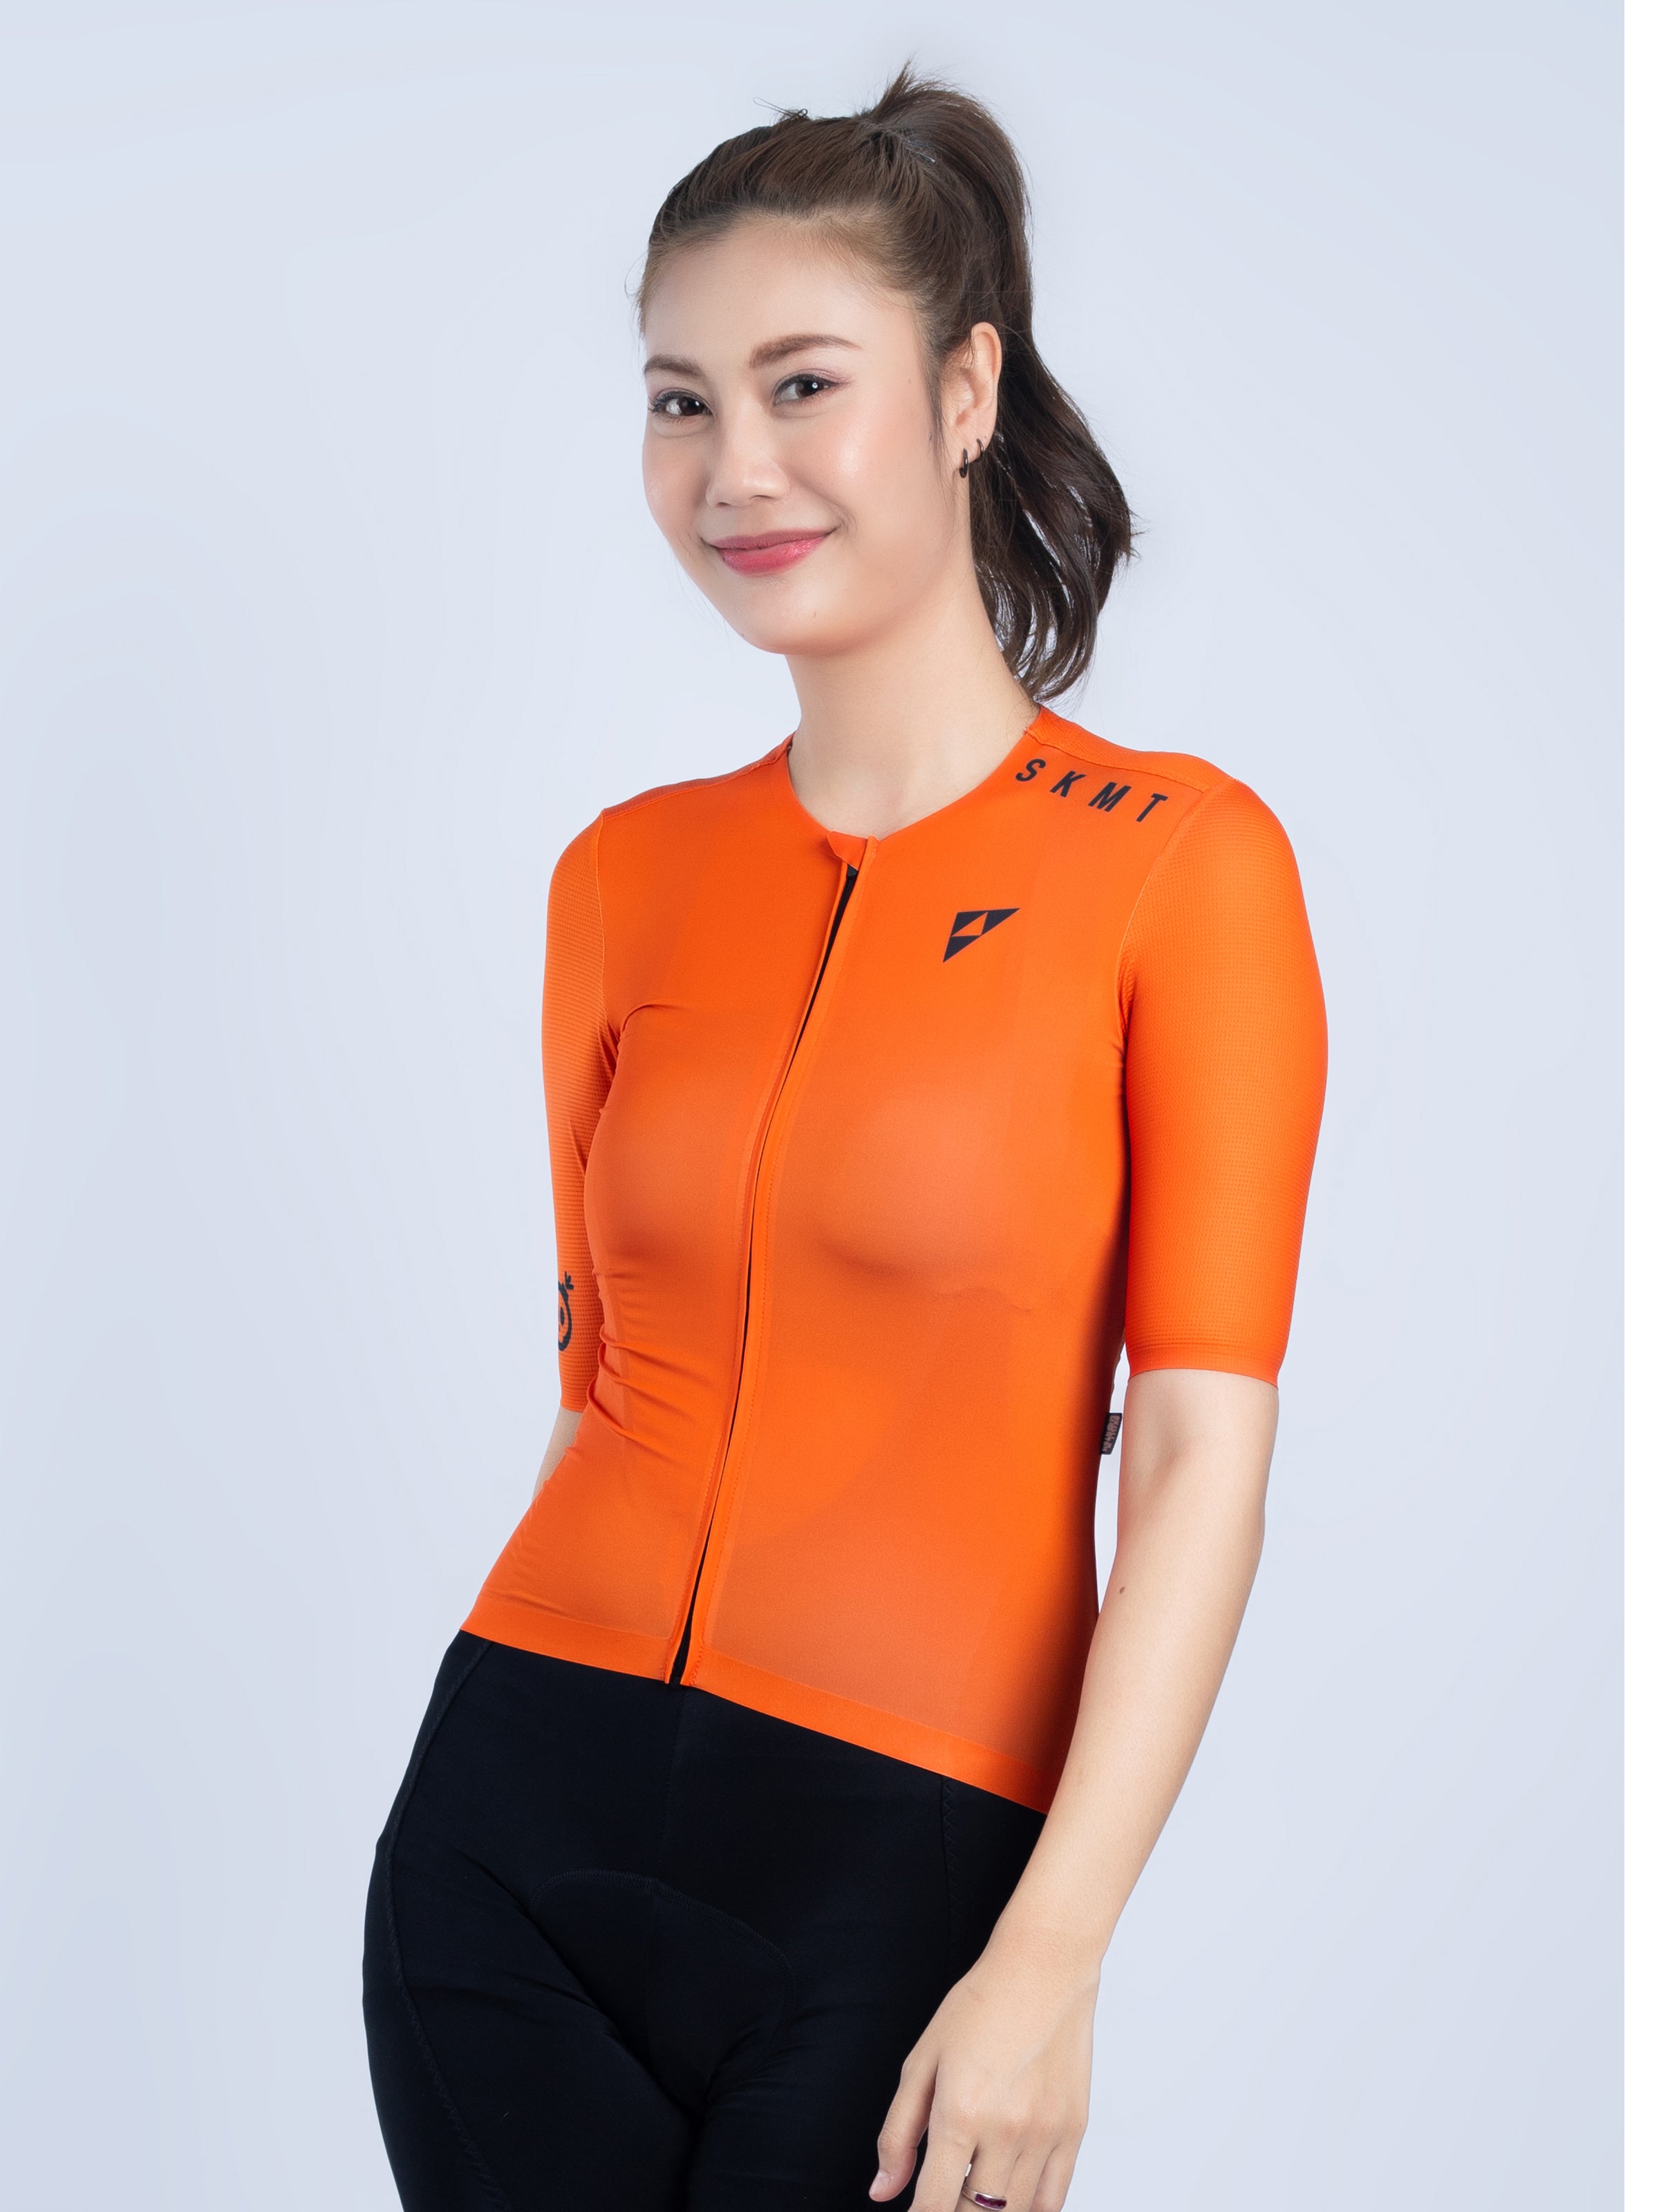 pro orange cycling jersey